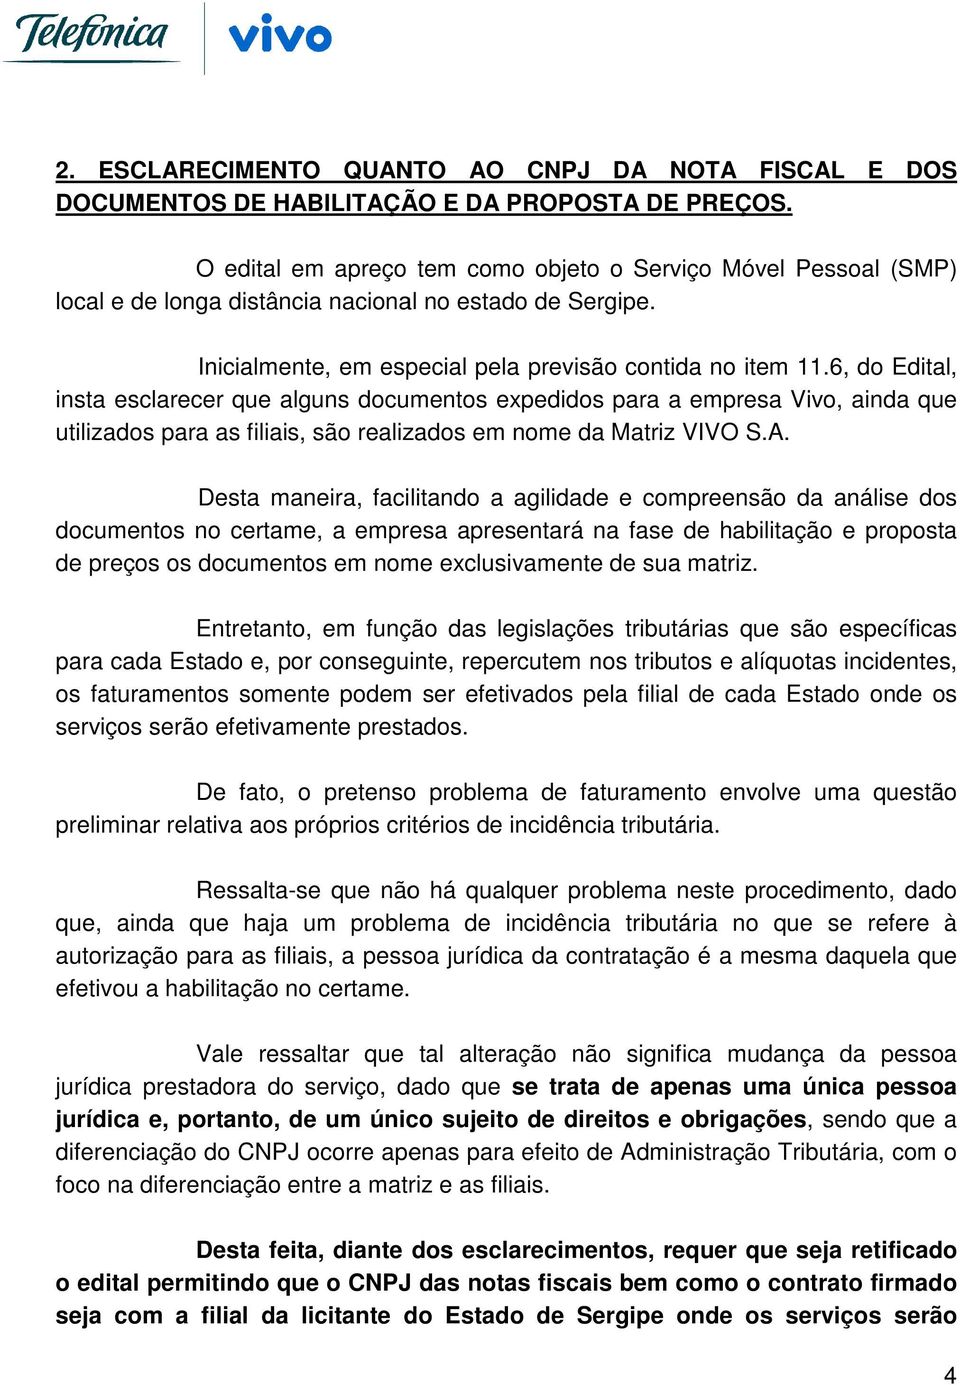 6, do Edital, insta esclarecer que alguns documentos expedidos para a empresa Vivo, ainda que utilizados para as filiais, são realizados em nome da Matriz VIVO S.A.